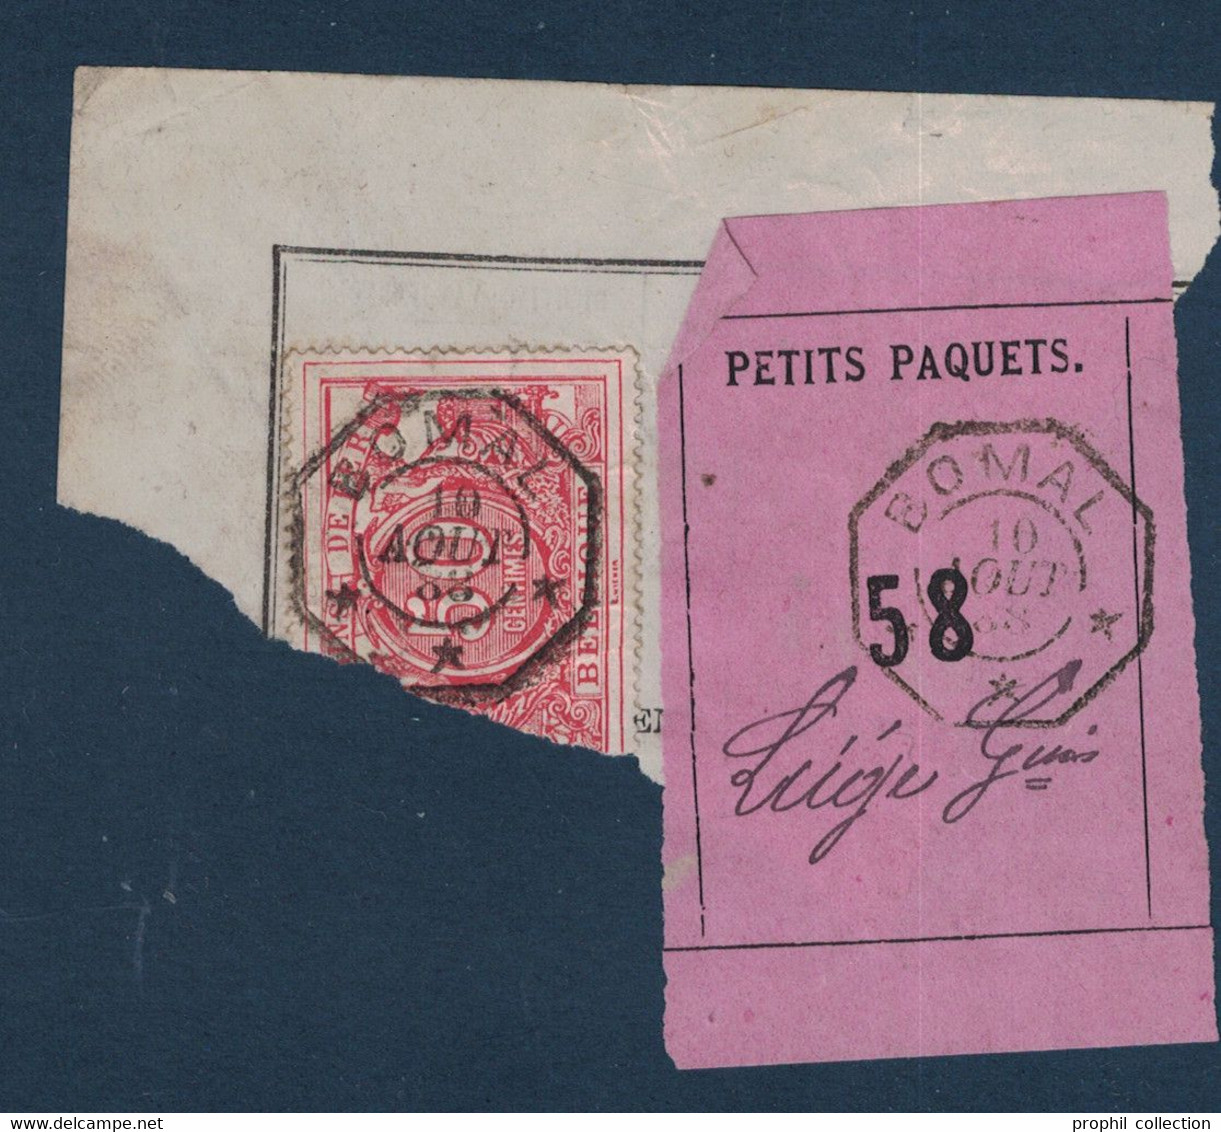 FRAGMENT Avec ETIQUETTE PETITS PAQUETS TIMBRE CHEMINS DE FER CACHET BOMAL > LIEGE 1888 - Documents & Fragments